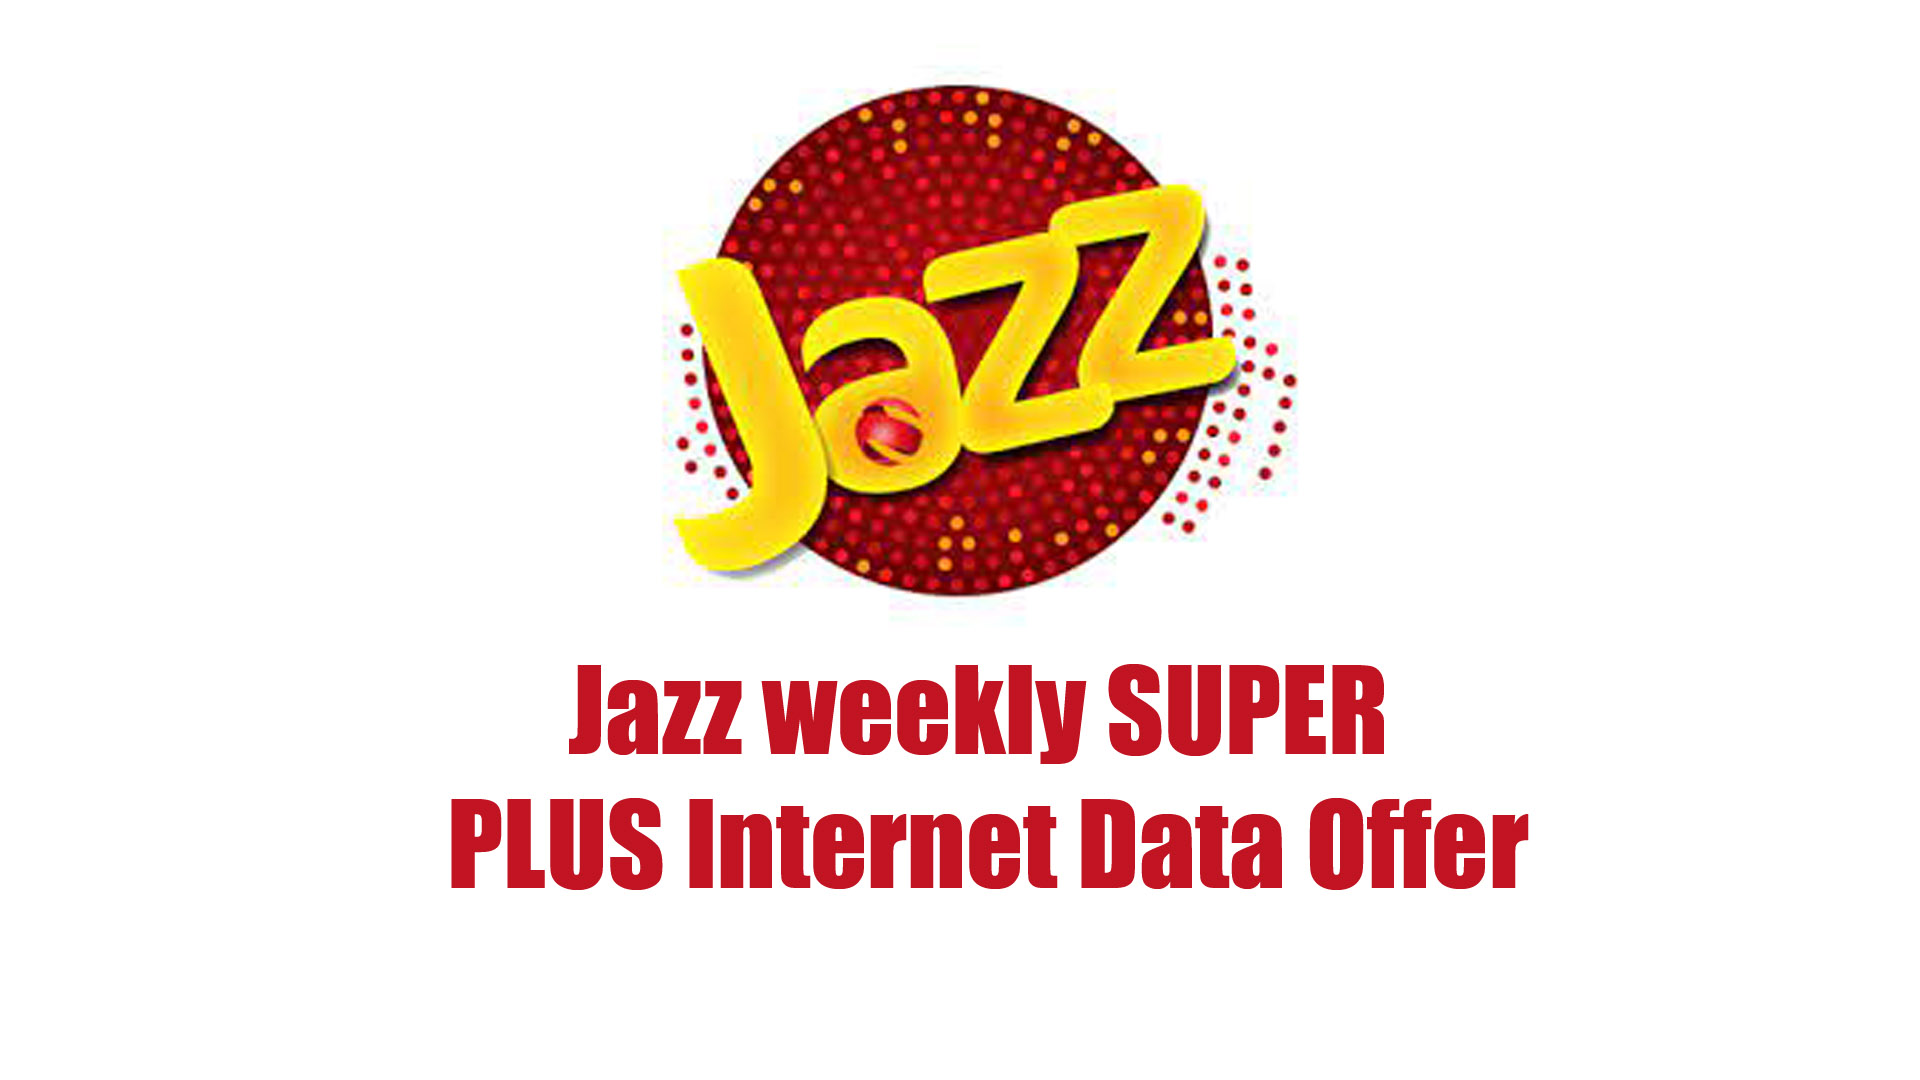 Jazz weekly SUPER PLUS Internet Data Offer